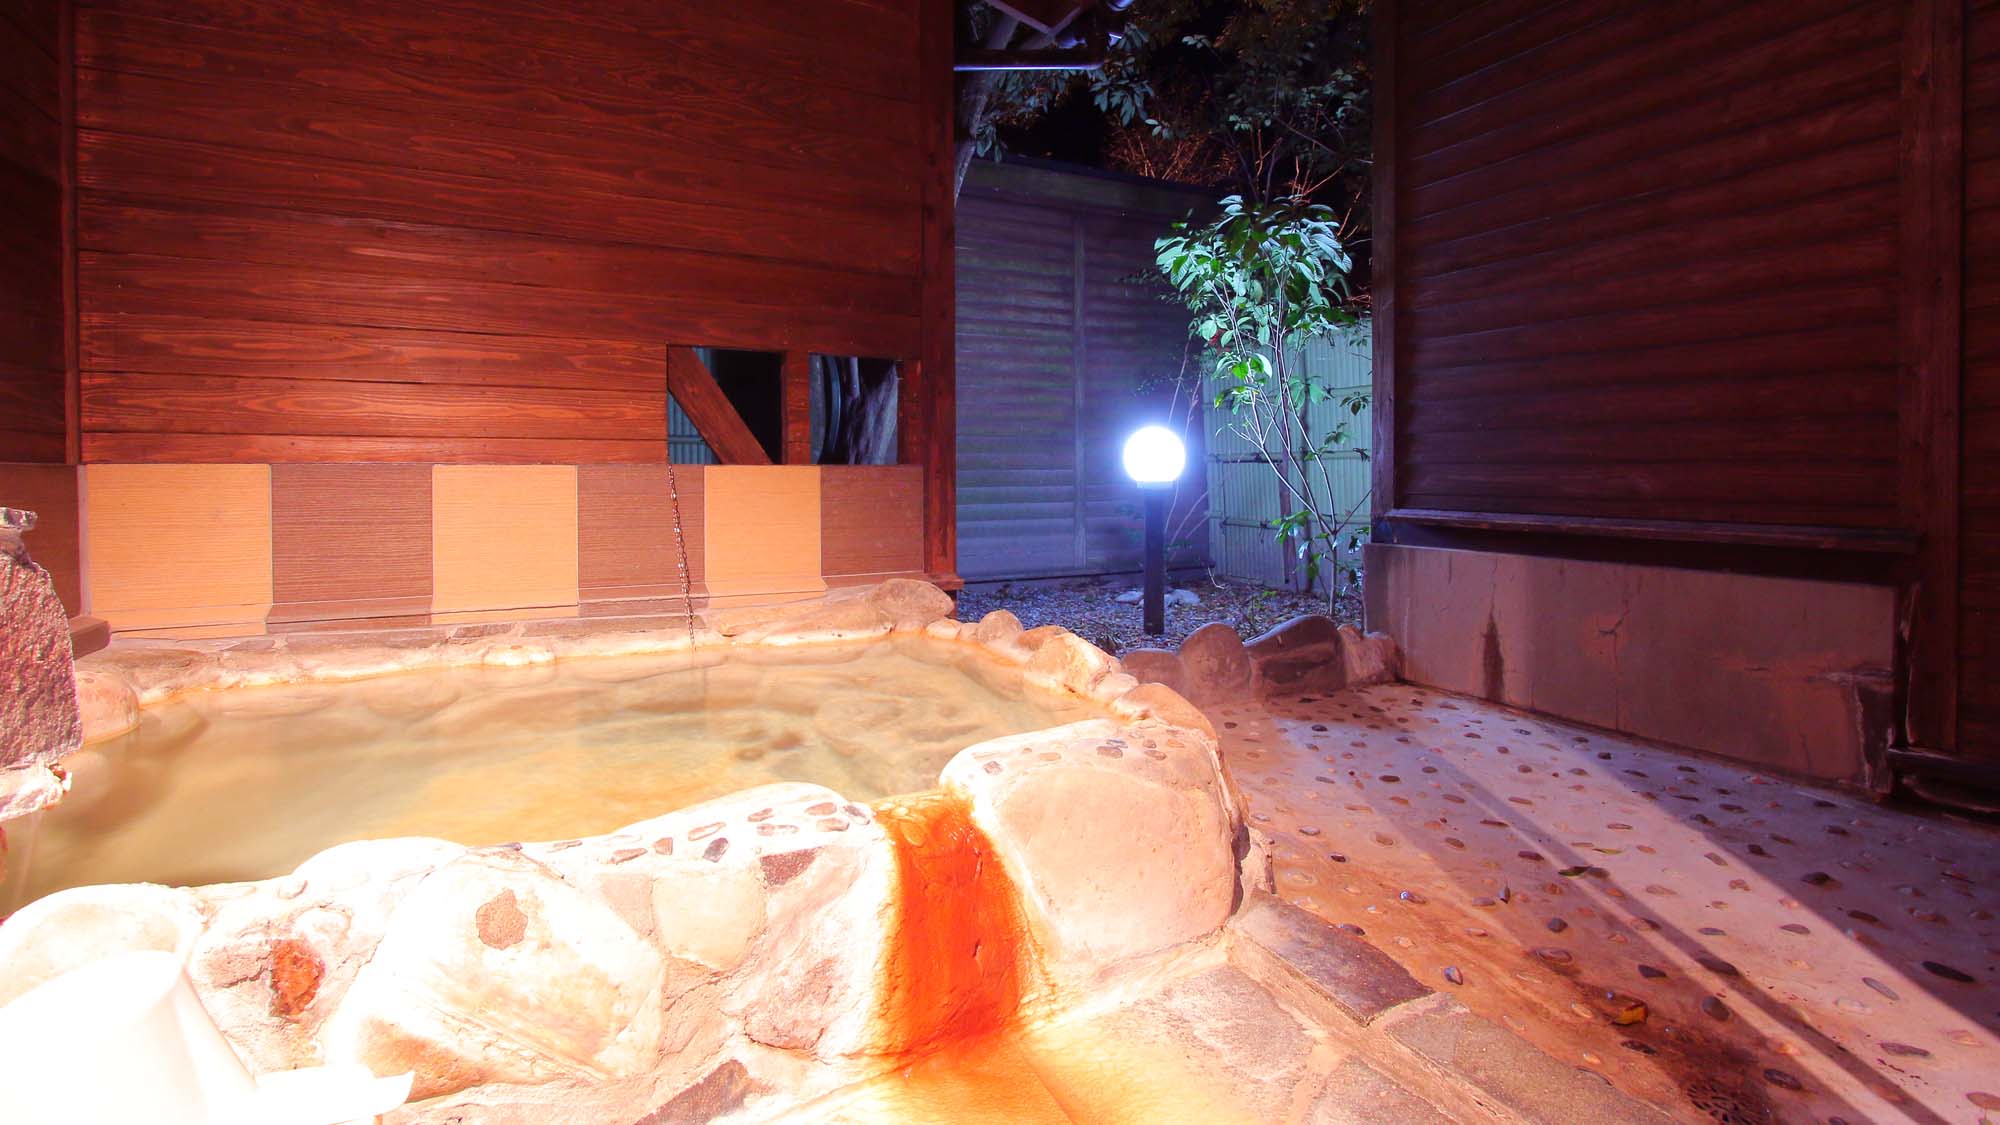 【1階露天風呂付き客室一例】専用の露天風呂